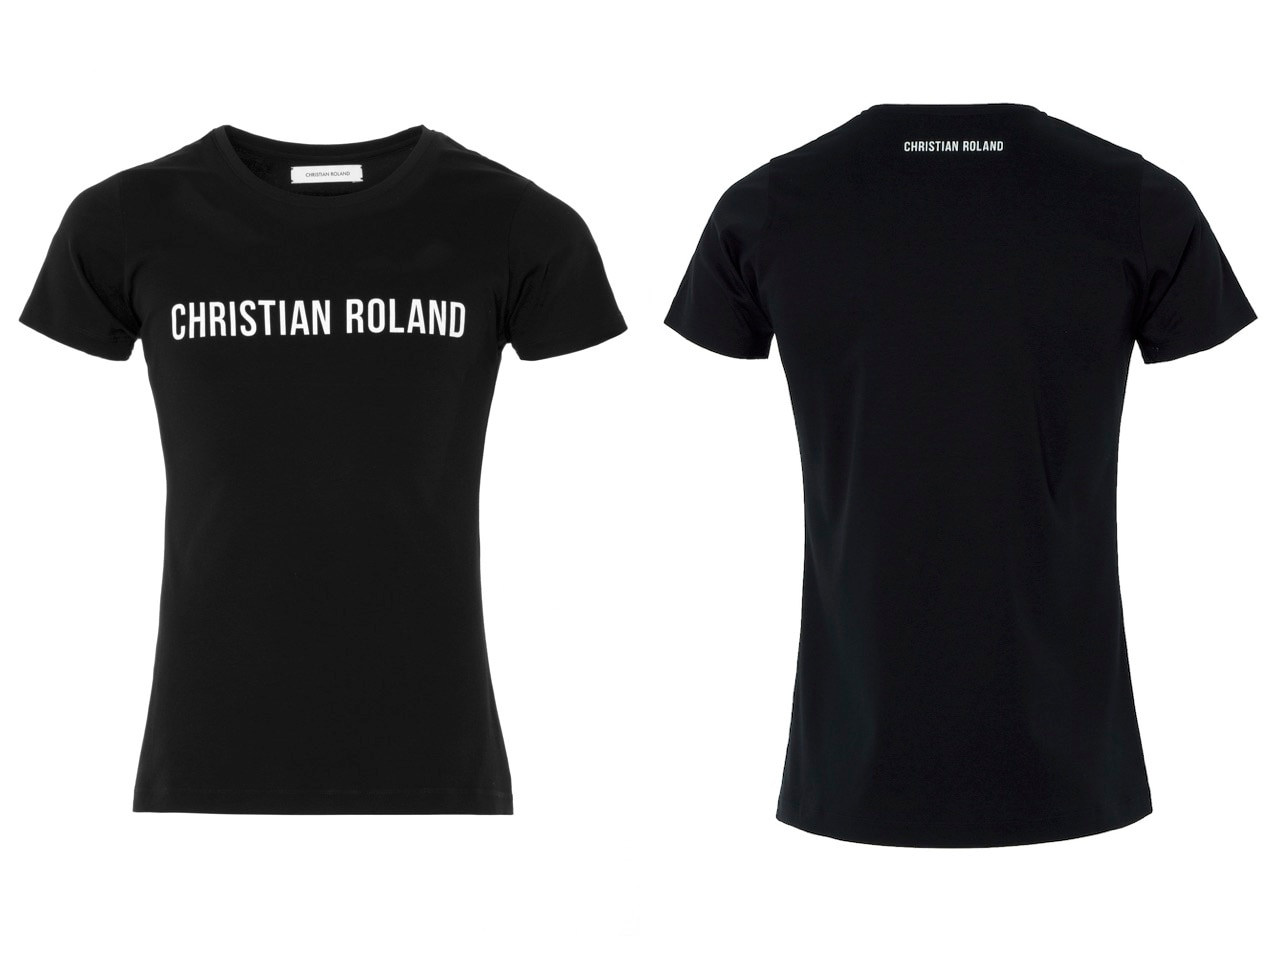 ROLANDさん愛用！CHRISTIAN ROLAND ロゴ入りTシャツのご紹介